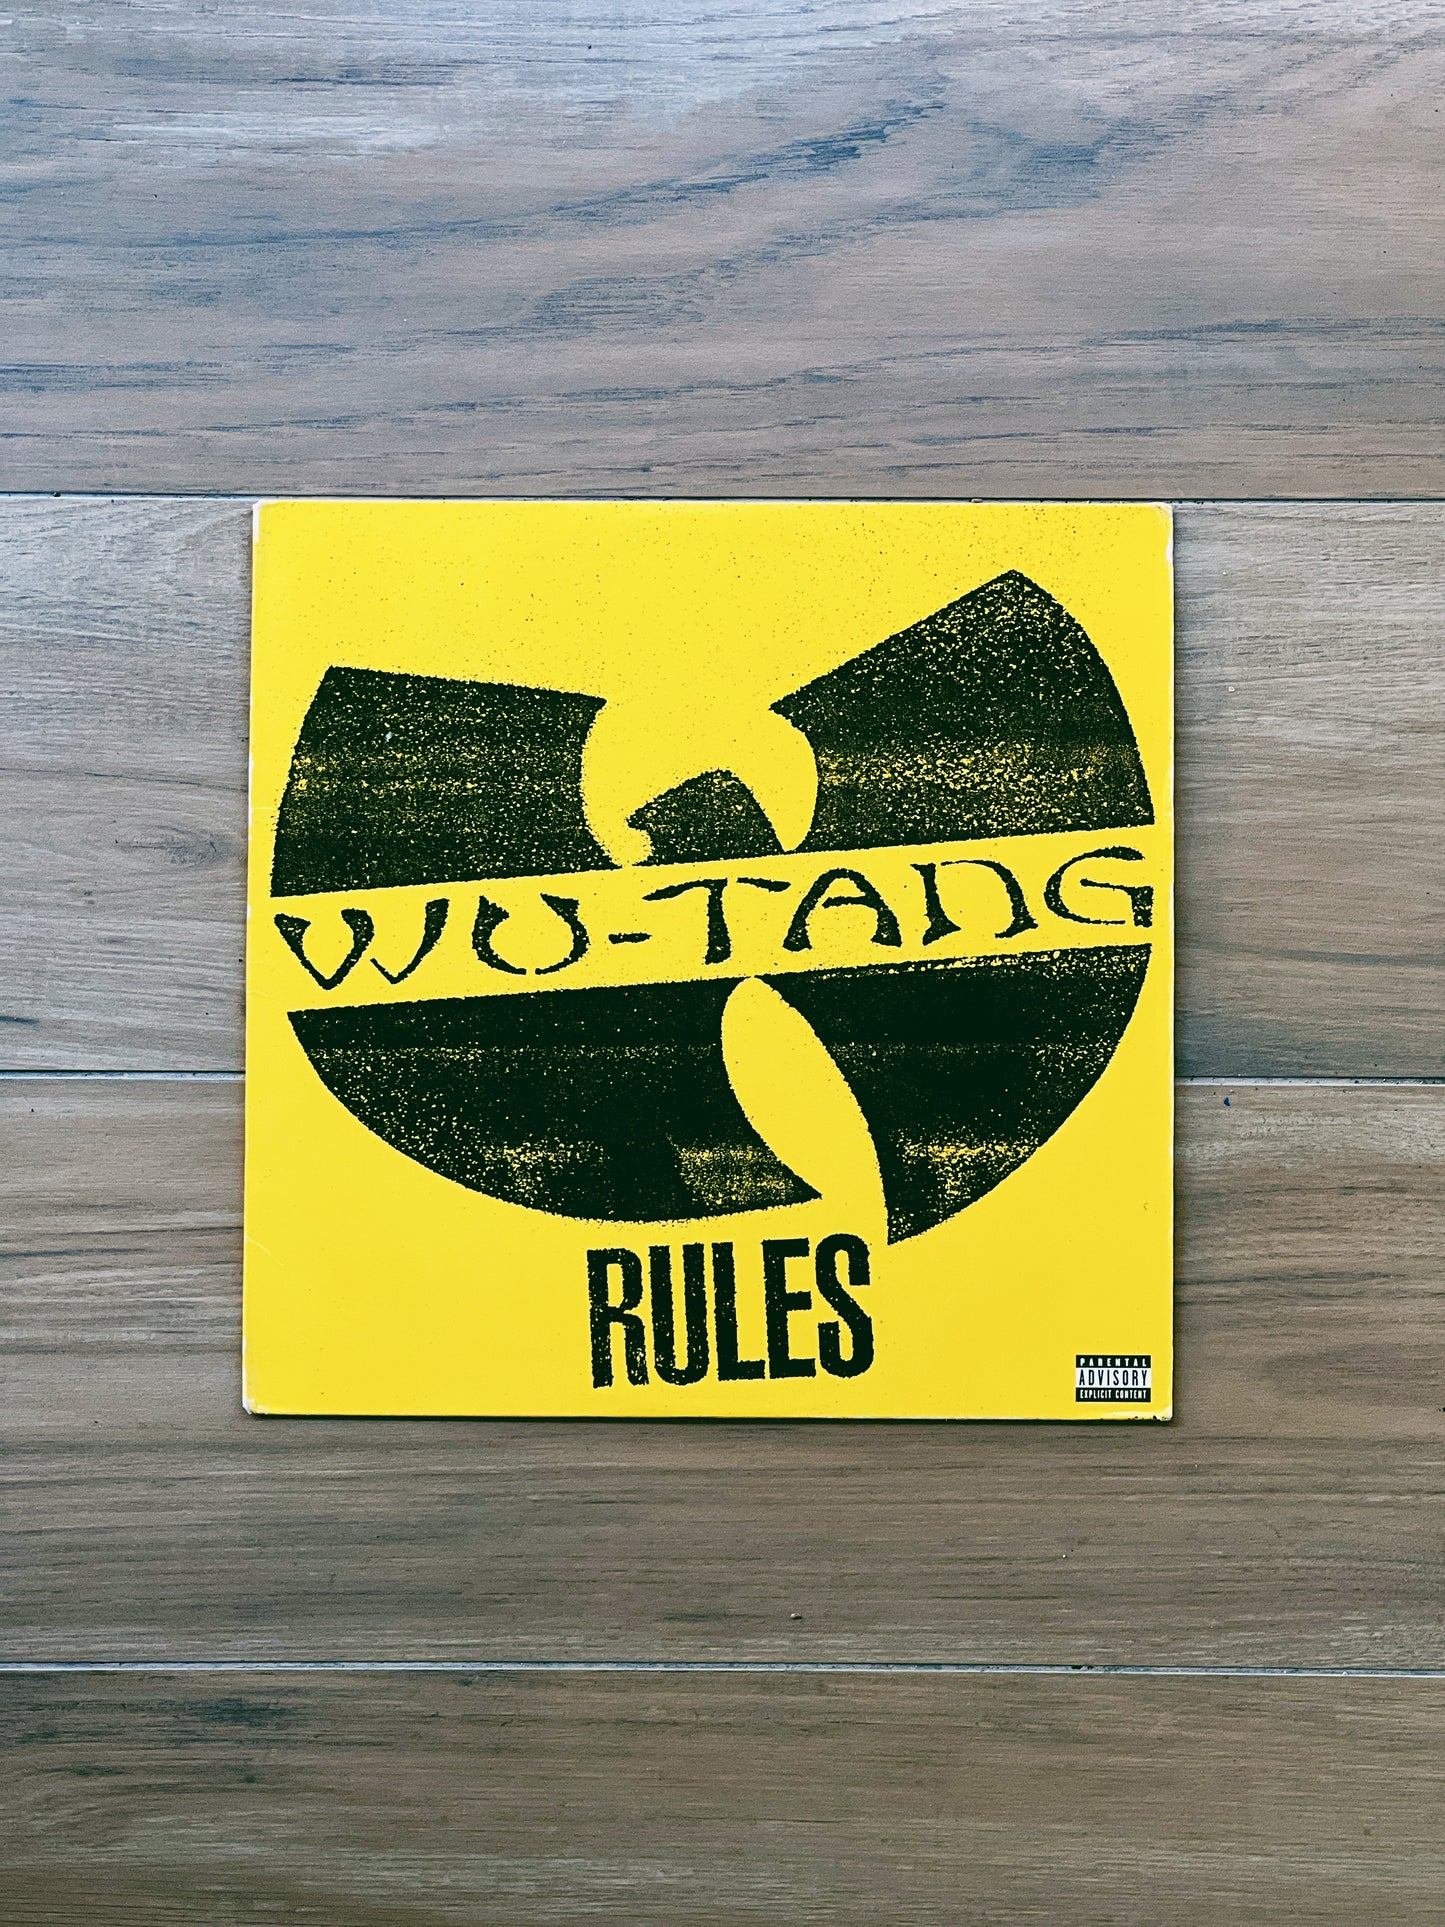 Wu-Tang - Rules